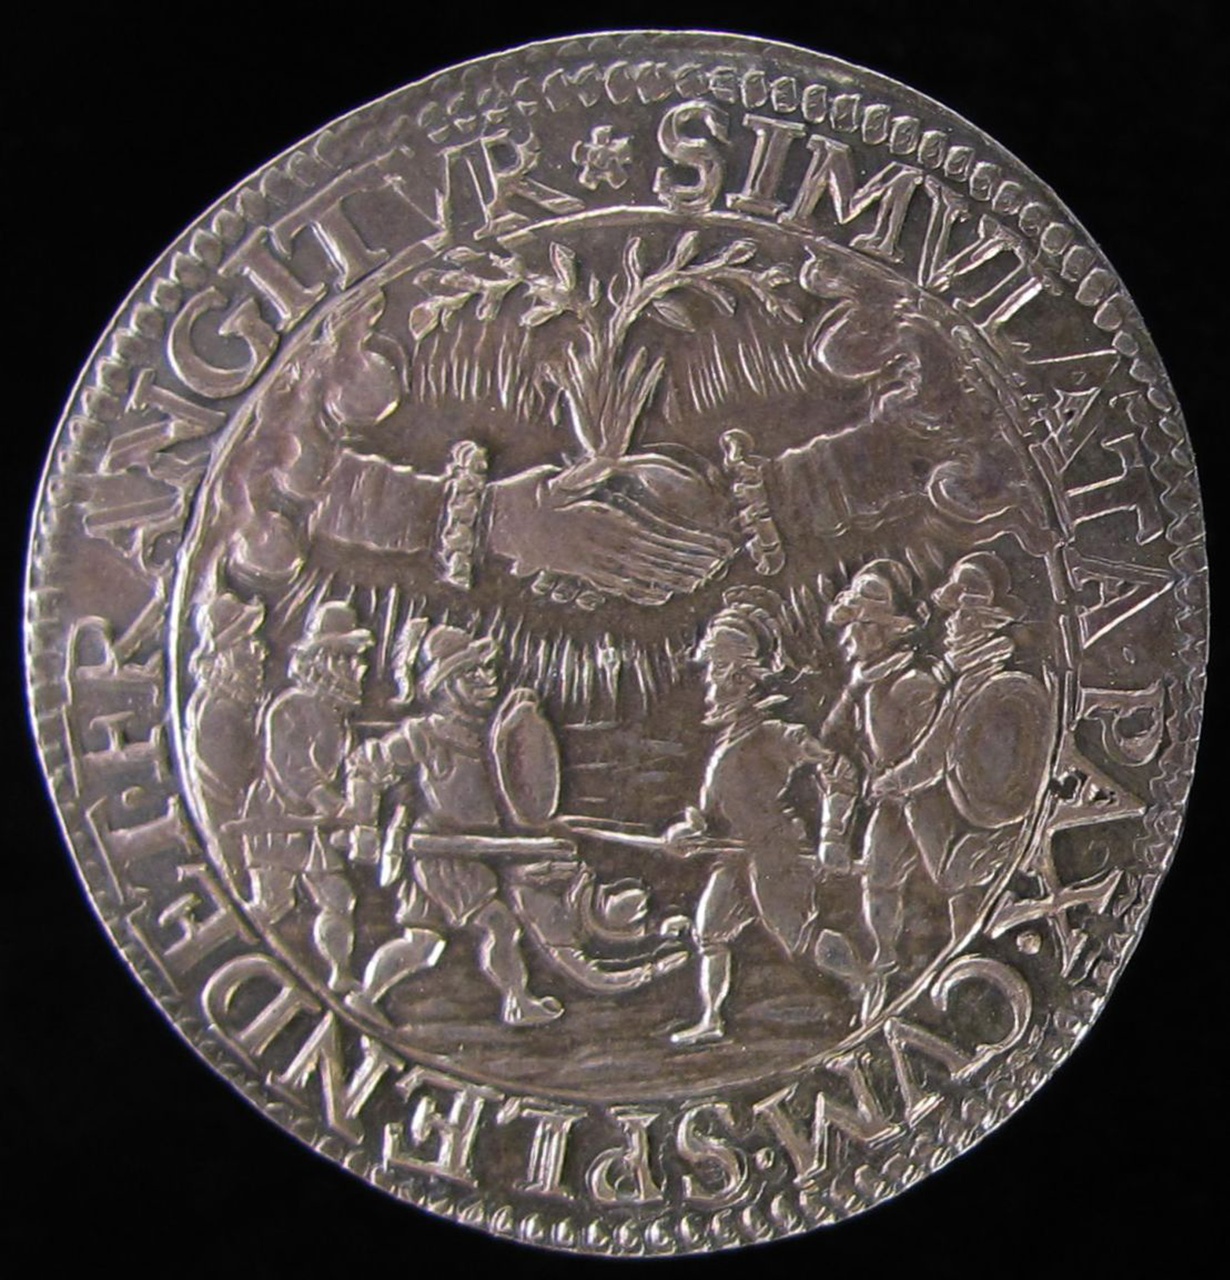 Goed vertrouwen op de Staten na het afbreken der vredesonderhandelingen, 1595